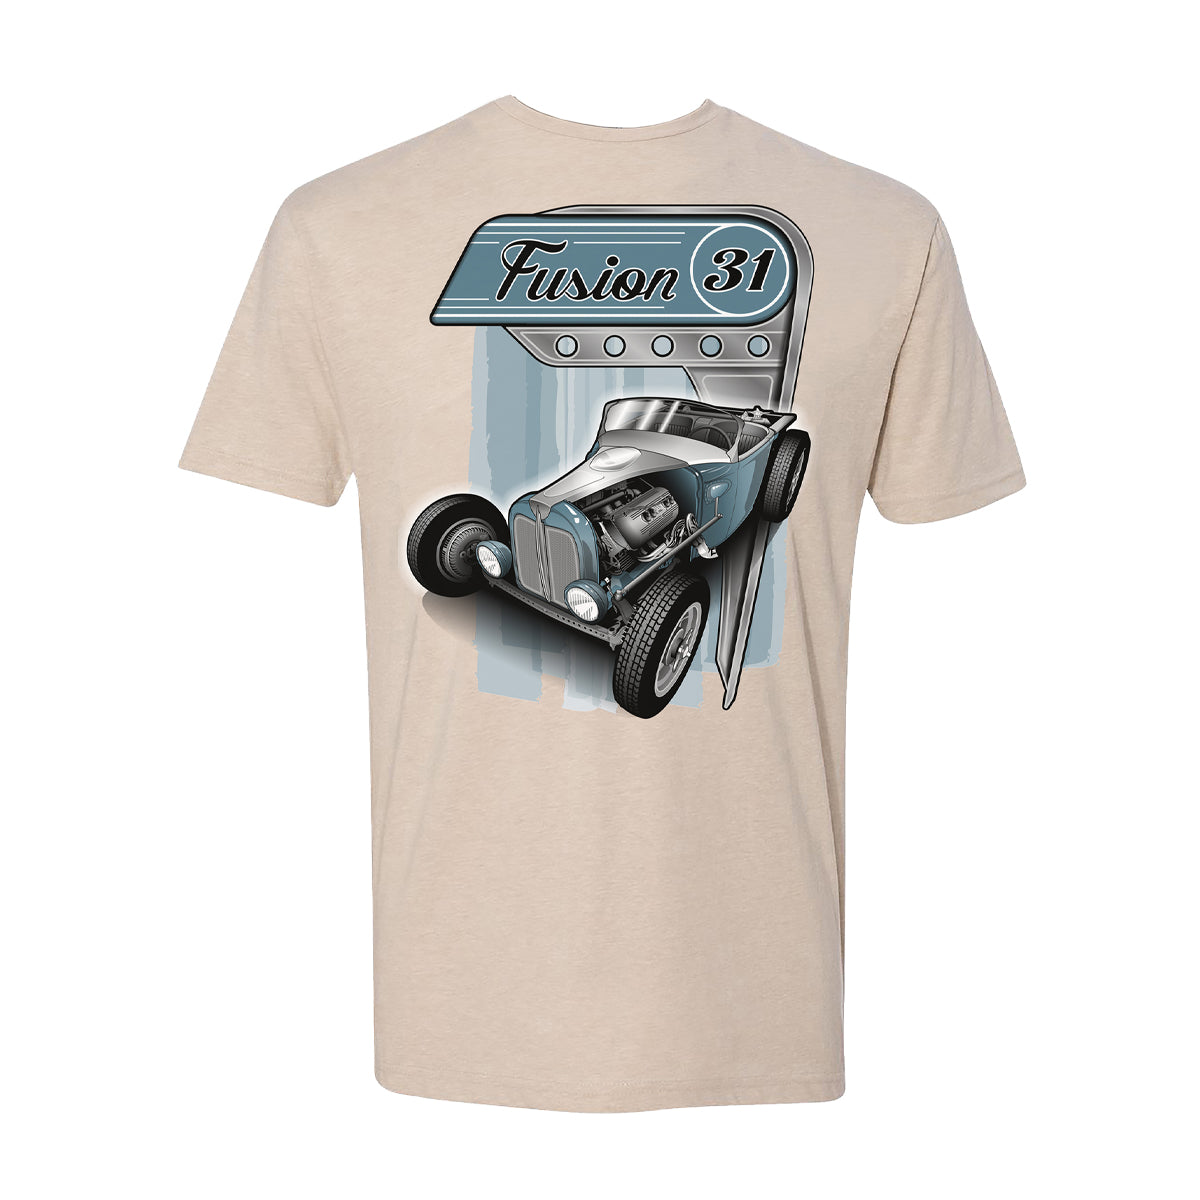 Fusion 31 T-Shirt